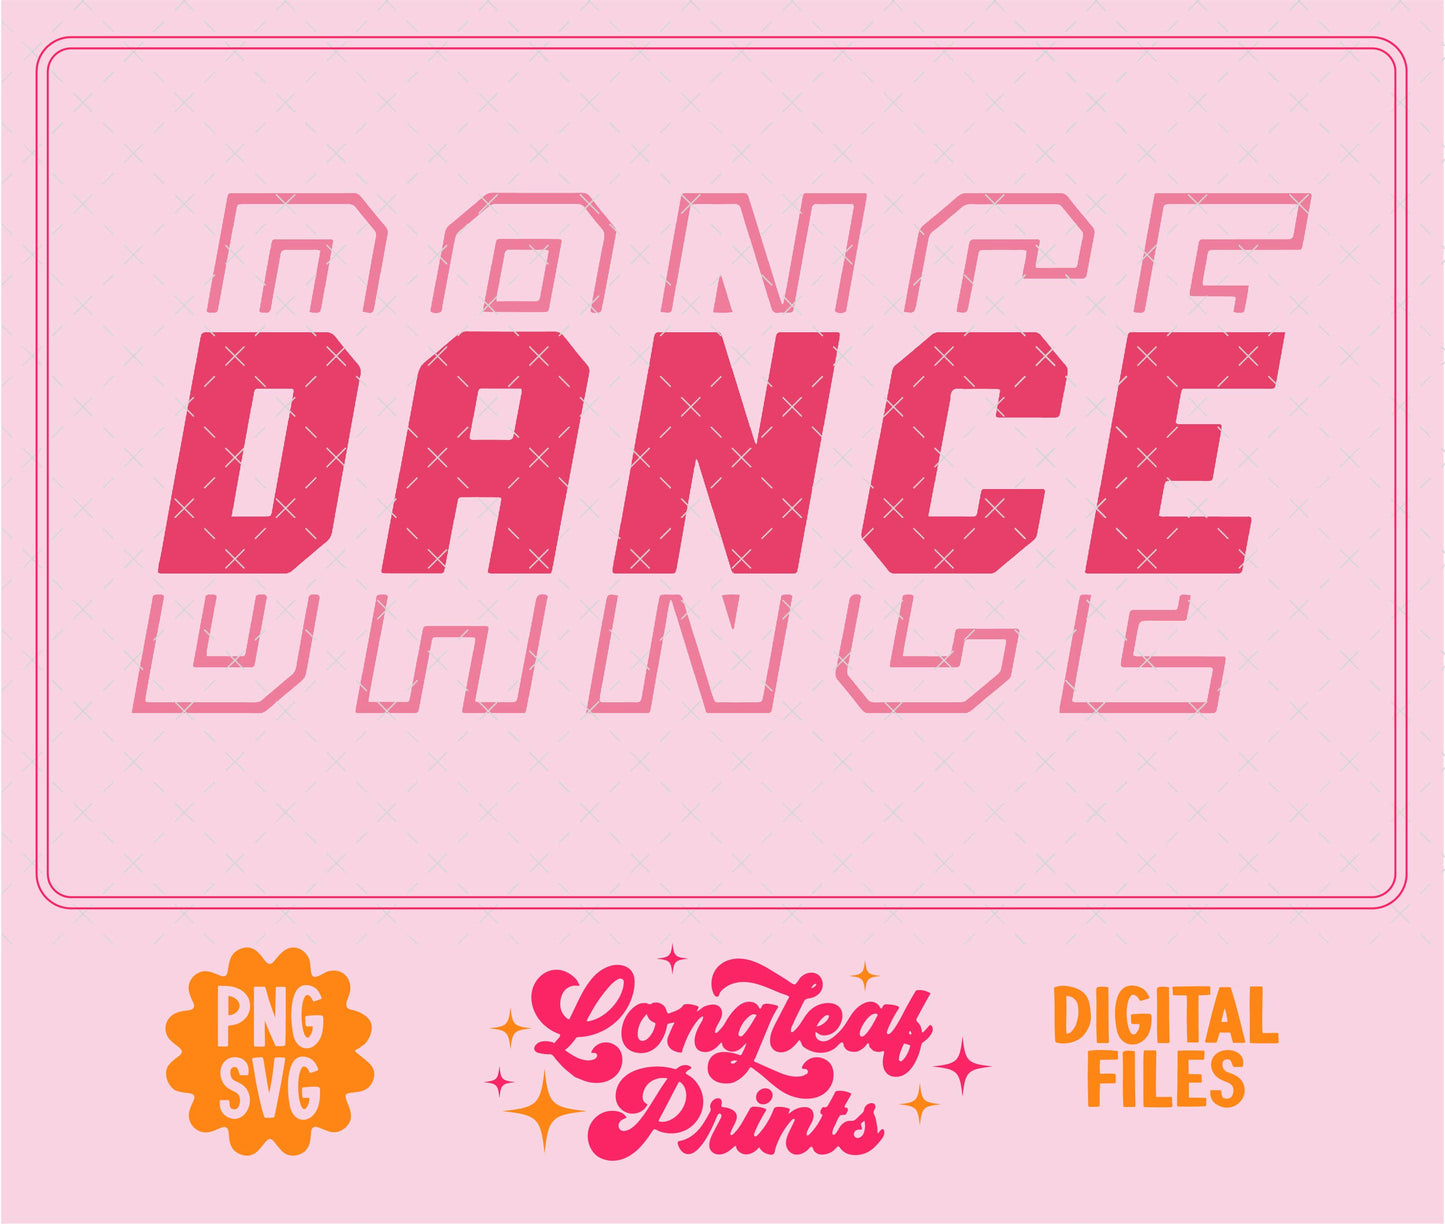 Dance Athletic SVG Digital Download Design File